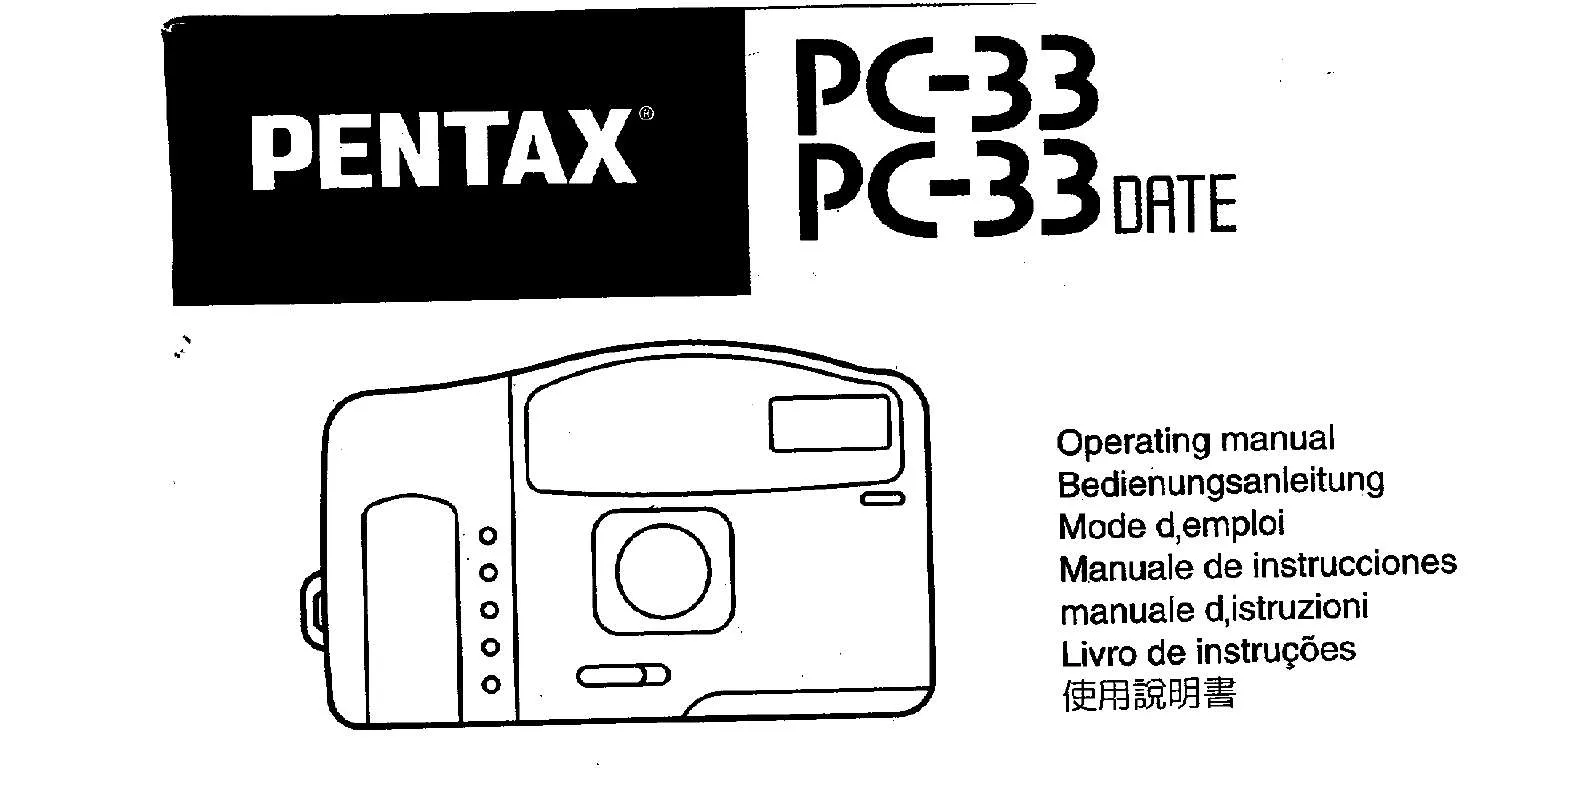 Mode d'emploi PENTAX PC-33